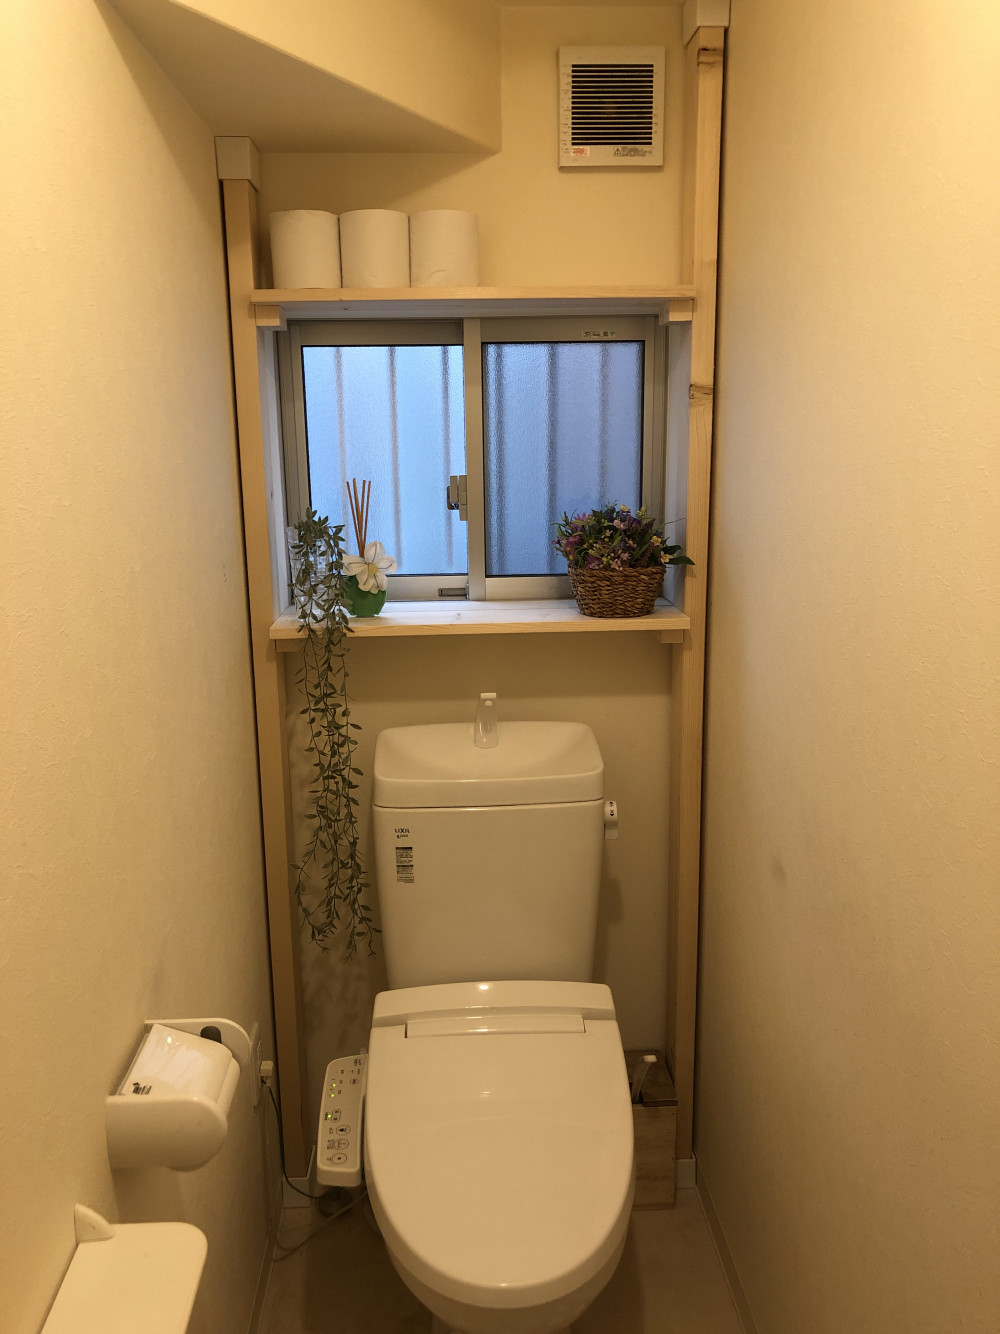 トイレDIY！簡単ディアウォールでトイレに棚をつくる WEBOO[ウィーブー] 暮らしをつくる